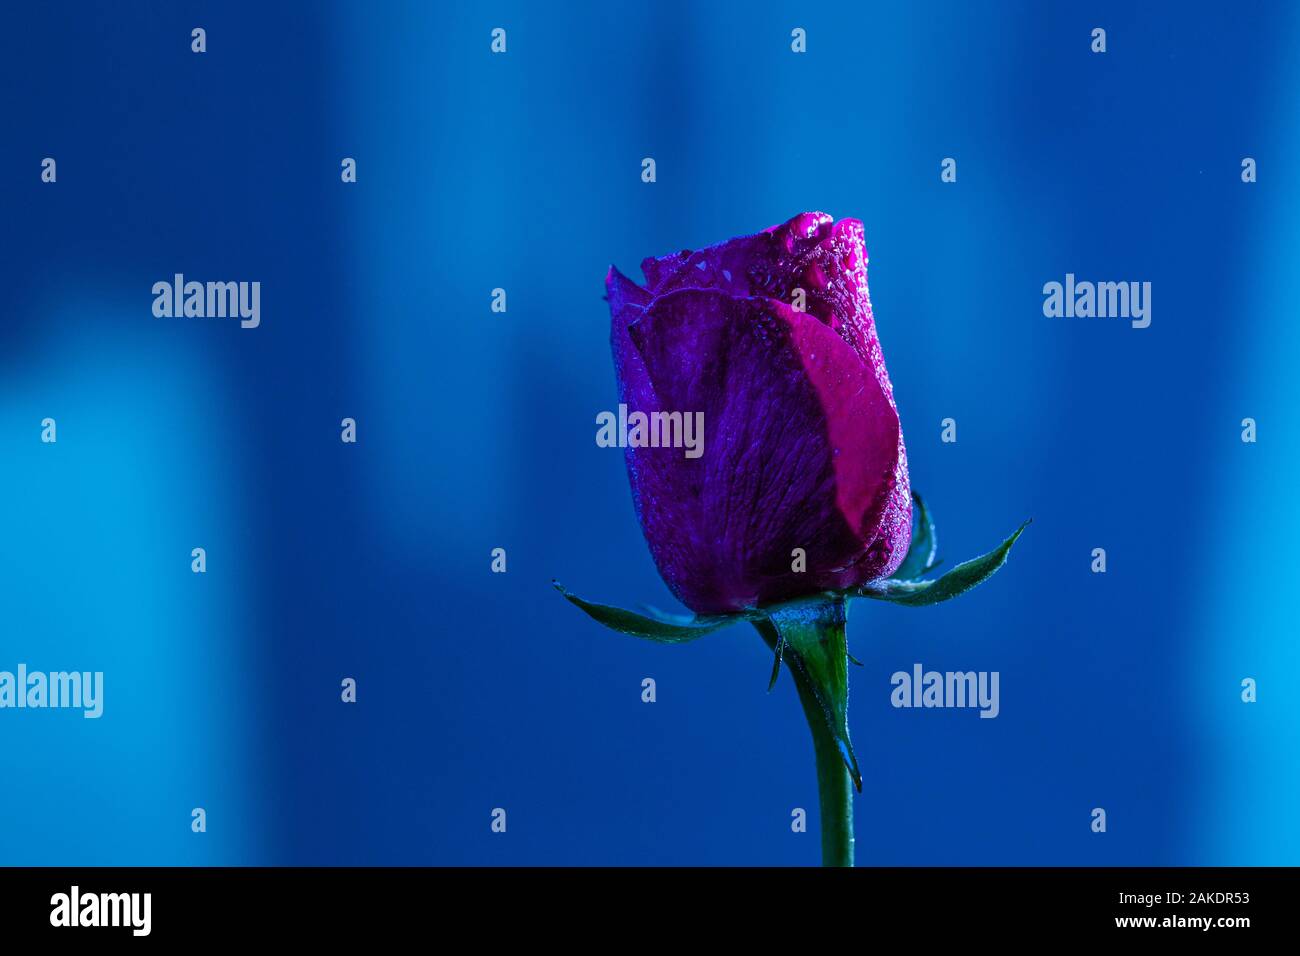 Nahaufnahme makro Shooting für frische Rose Blume auf abstrakte verschwommenen Hintergrund in leuchtenden Blautönen Stockfoto